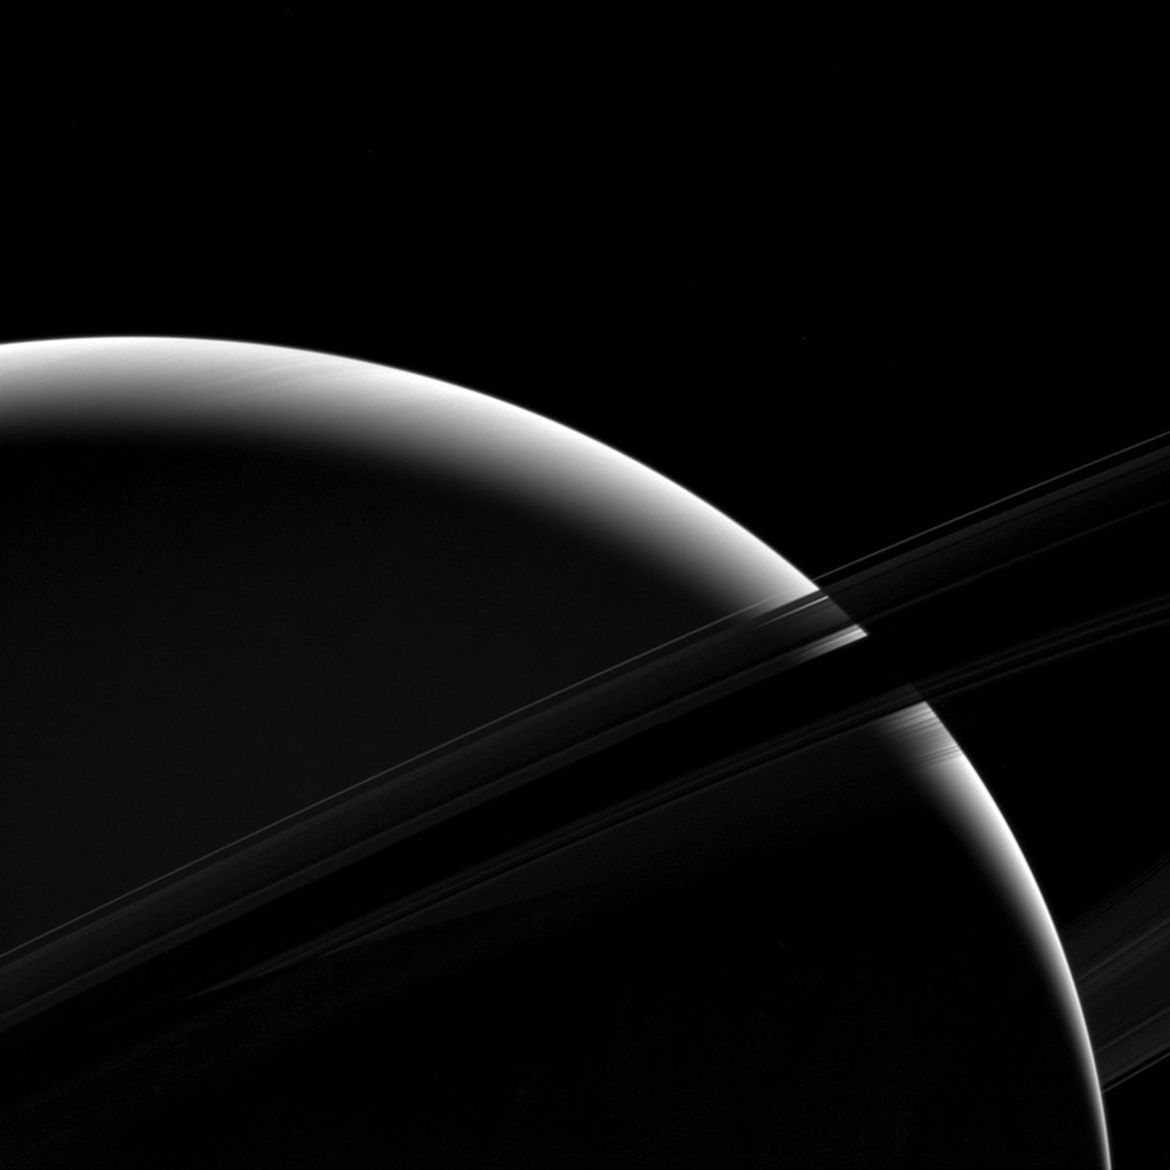 遥远外太空飞船拍到非凡近照，土星星环壮丽（土星照片）